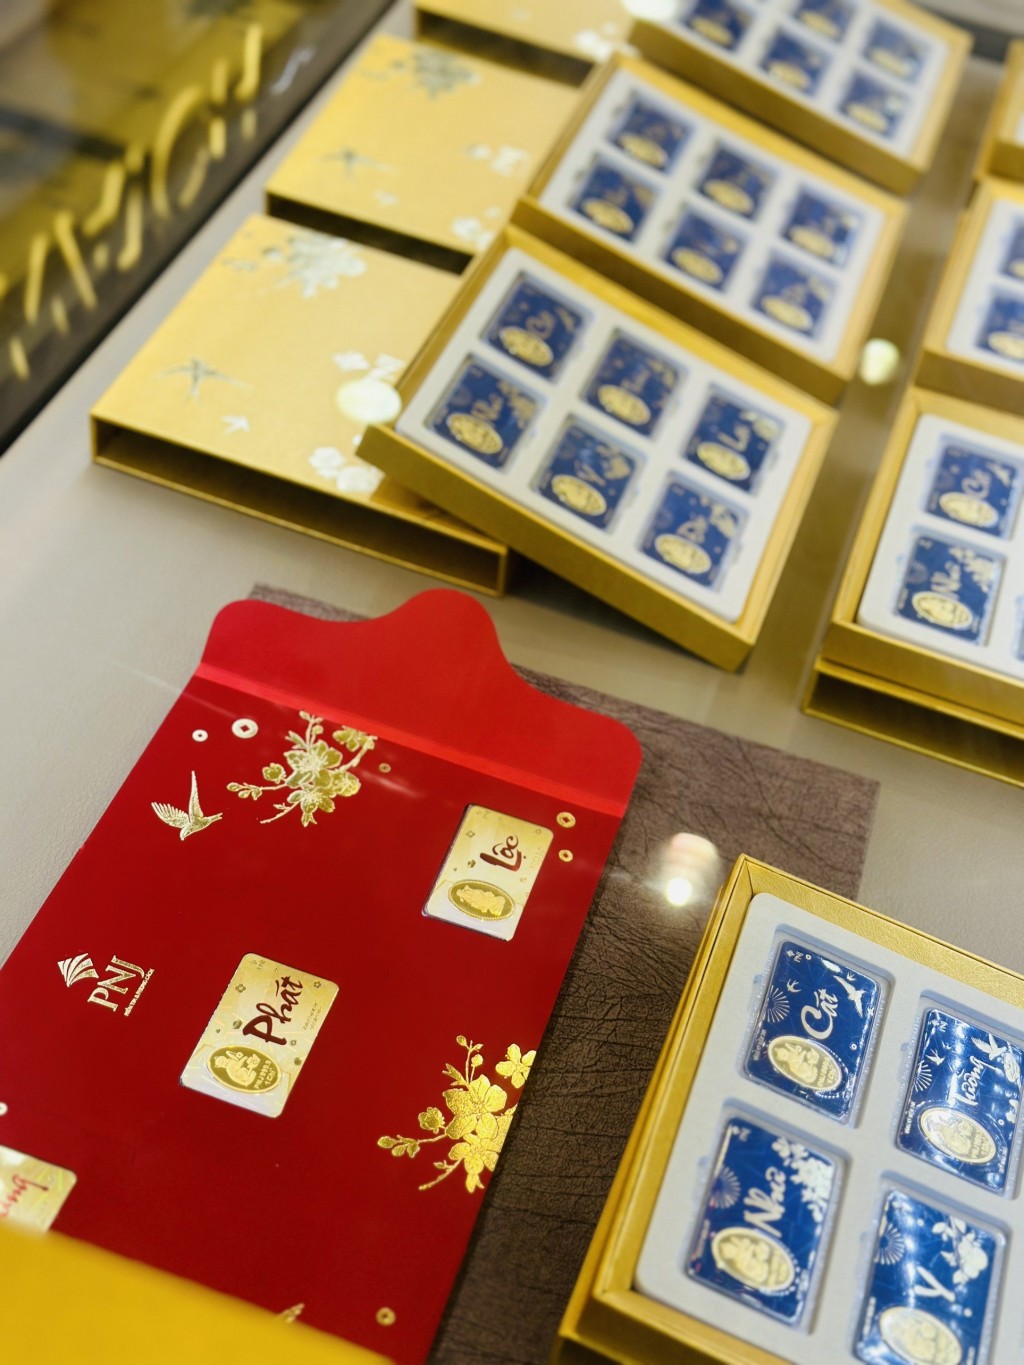 Khách hàng lựa chọn set vàng 12 miếng đặc biệt lấy cảm hứng từ 12 linh vật biểu trưng cho sự may mắn, phú quý tài lộc